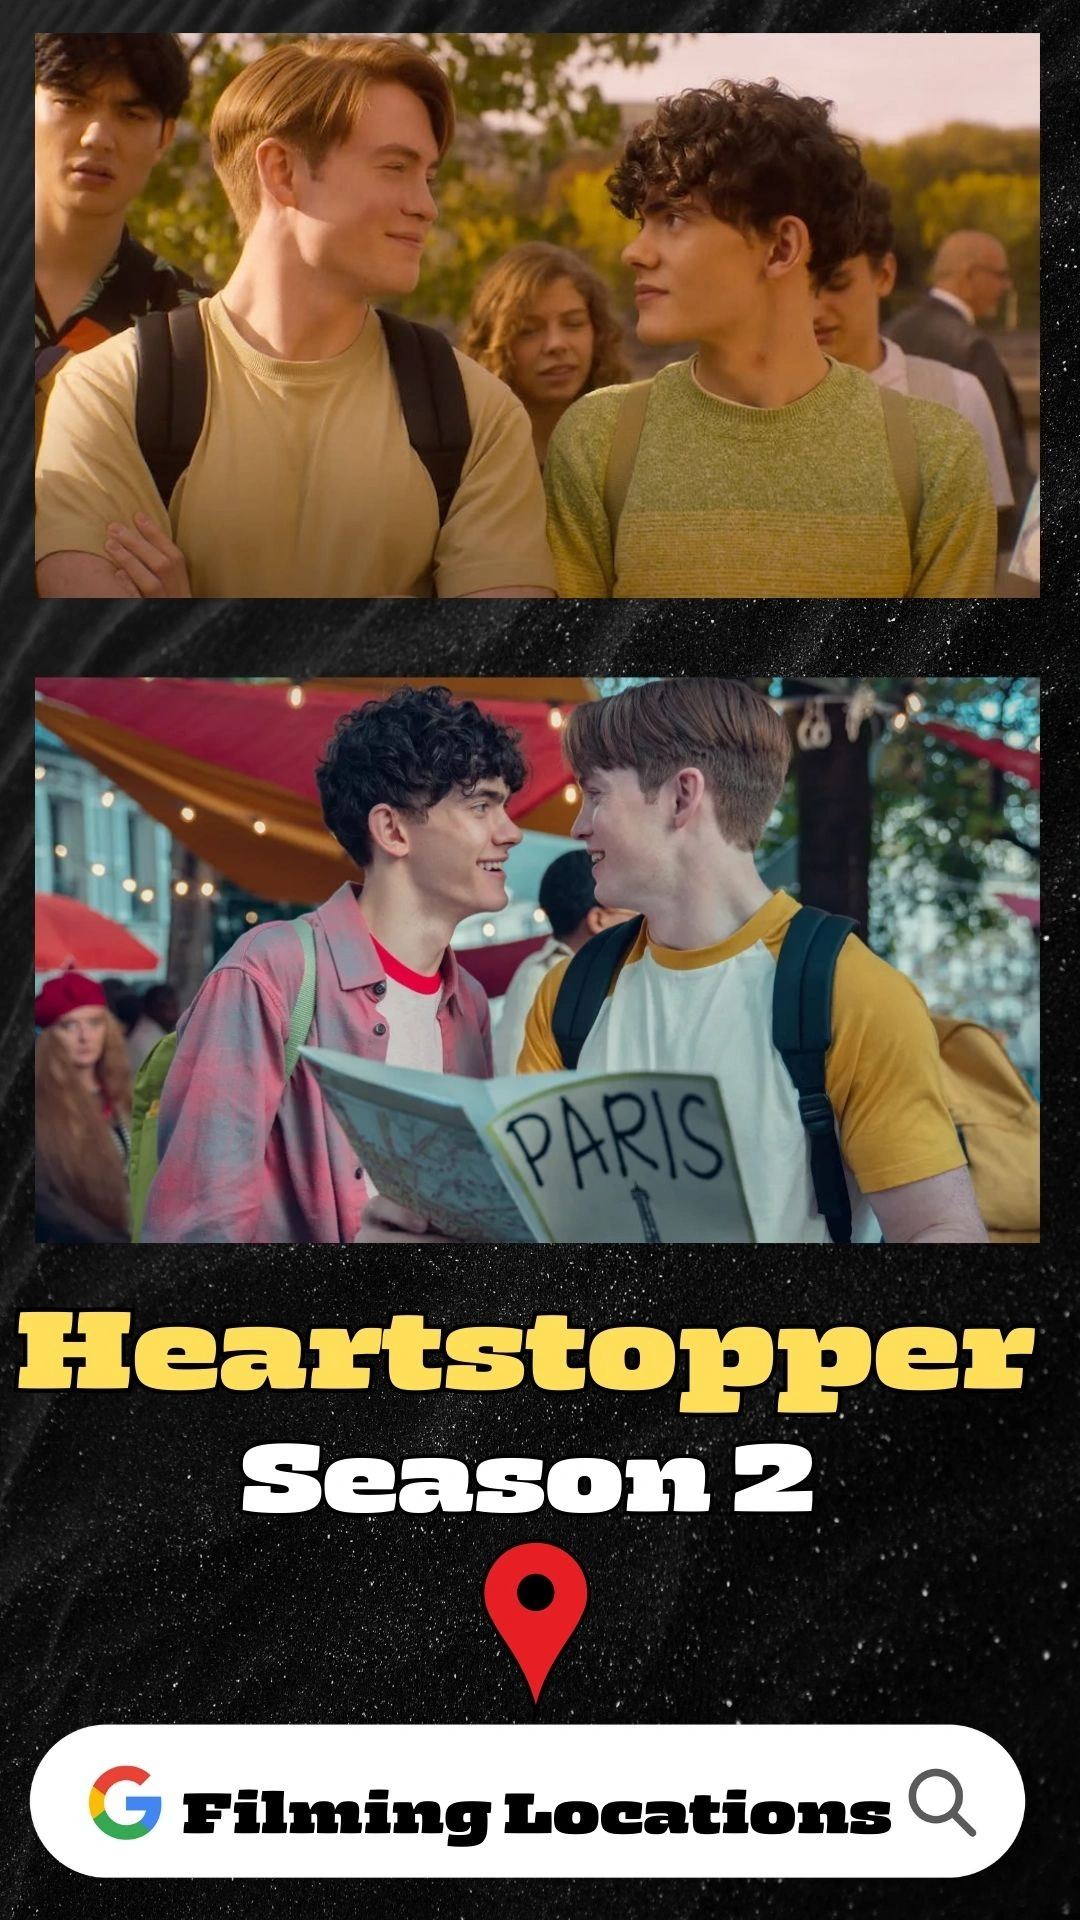 Heartstopper Season 2 Filming Locations